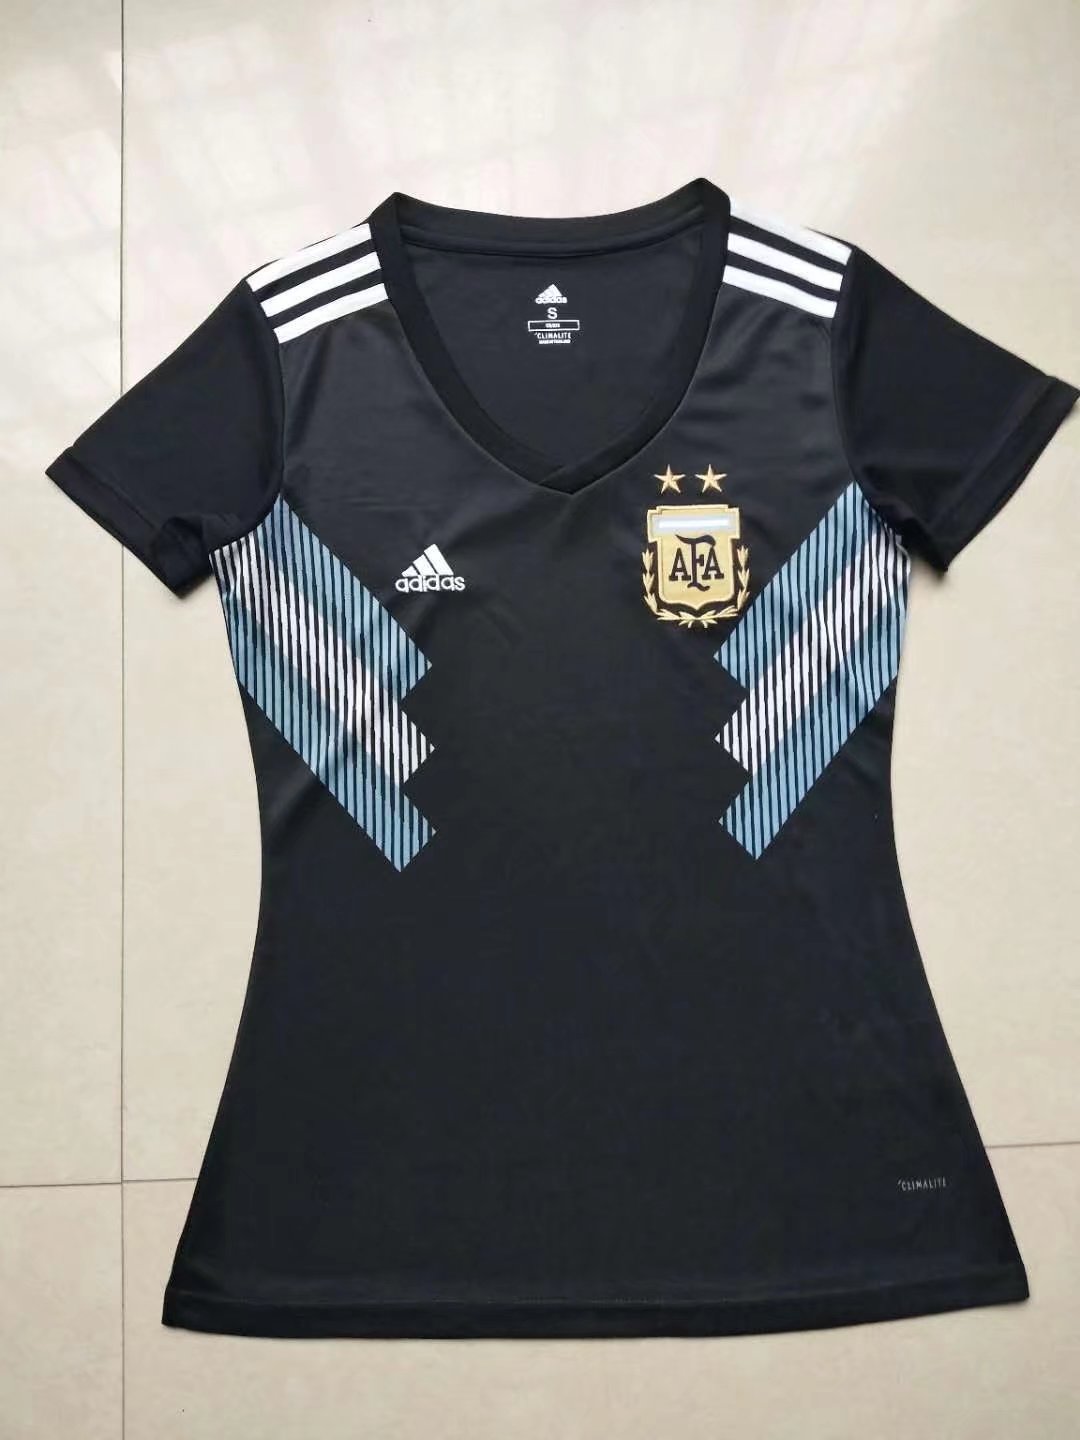 2018 World Cup Argentina Away Women's Soccer Jersey Shirt - Cheap Soccer Jerseys Shop MINEJERSEYS.RU